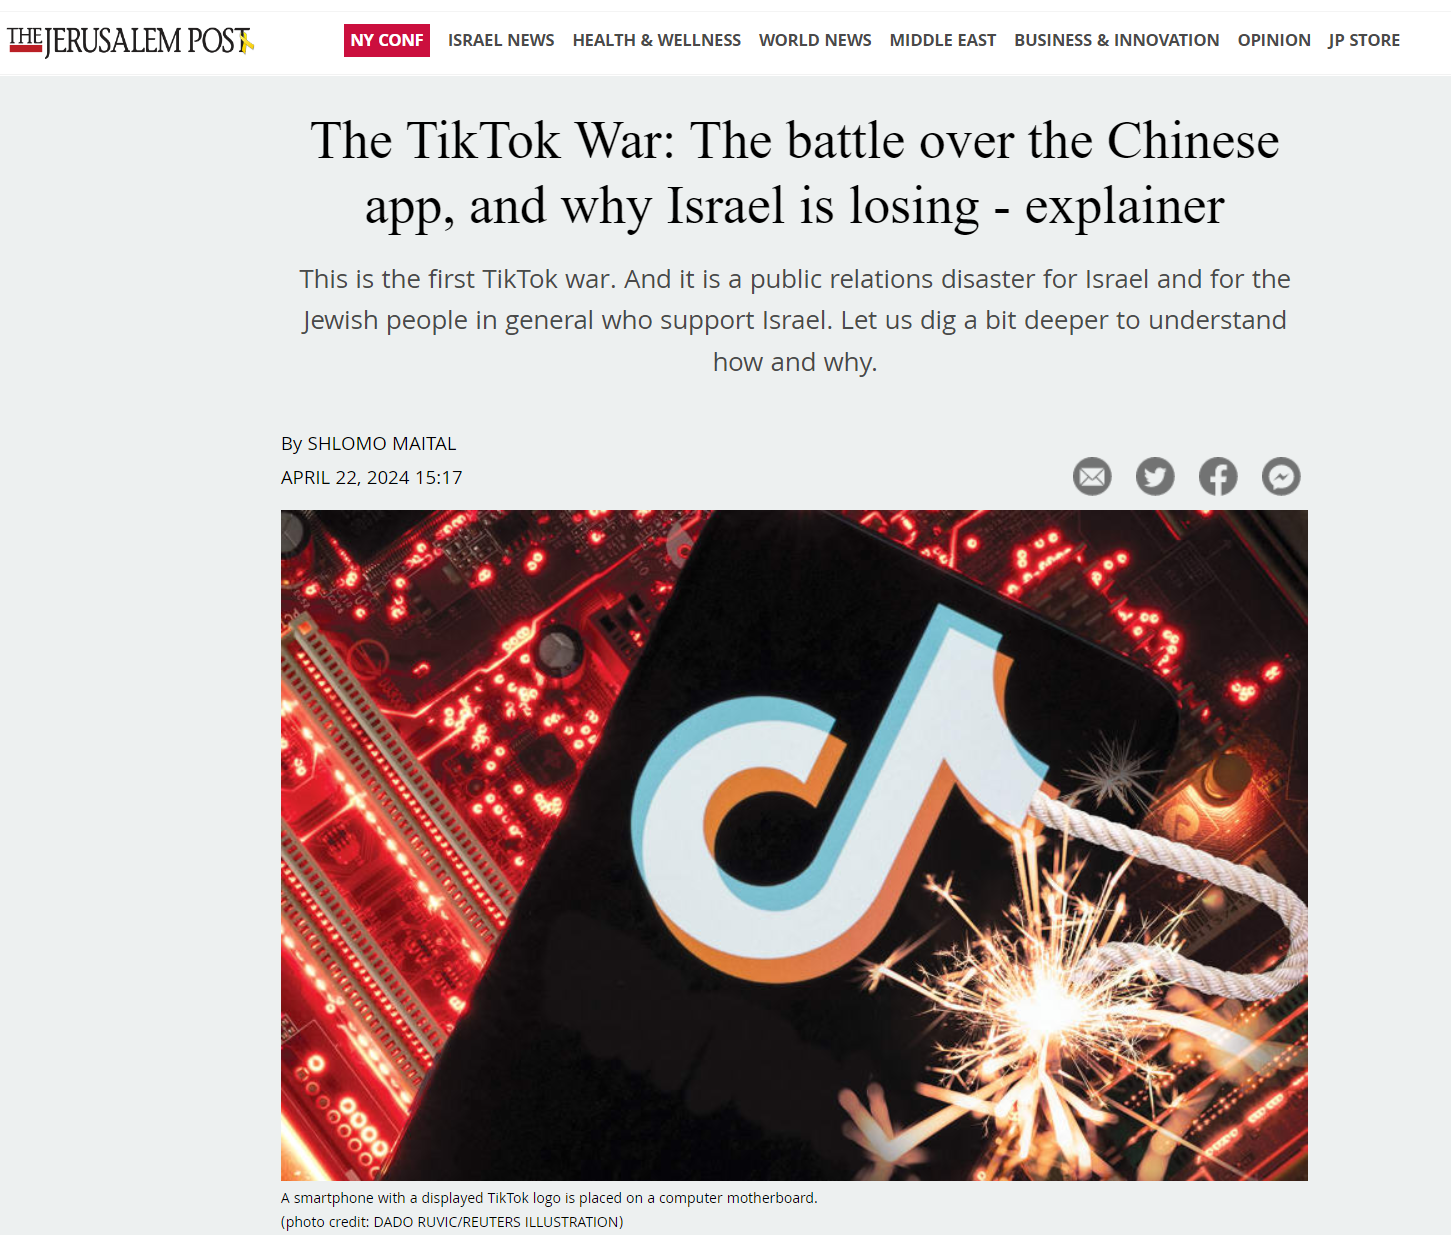 מלחמת הטיקטוק: הקרב על האפליקציה הסינית  ואיך קורה שישראל מפסידה